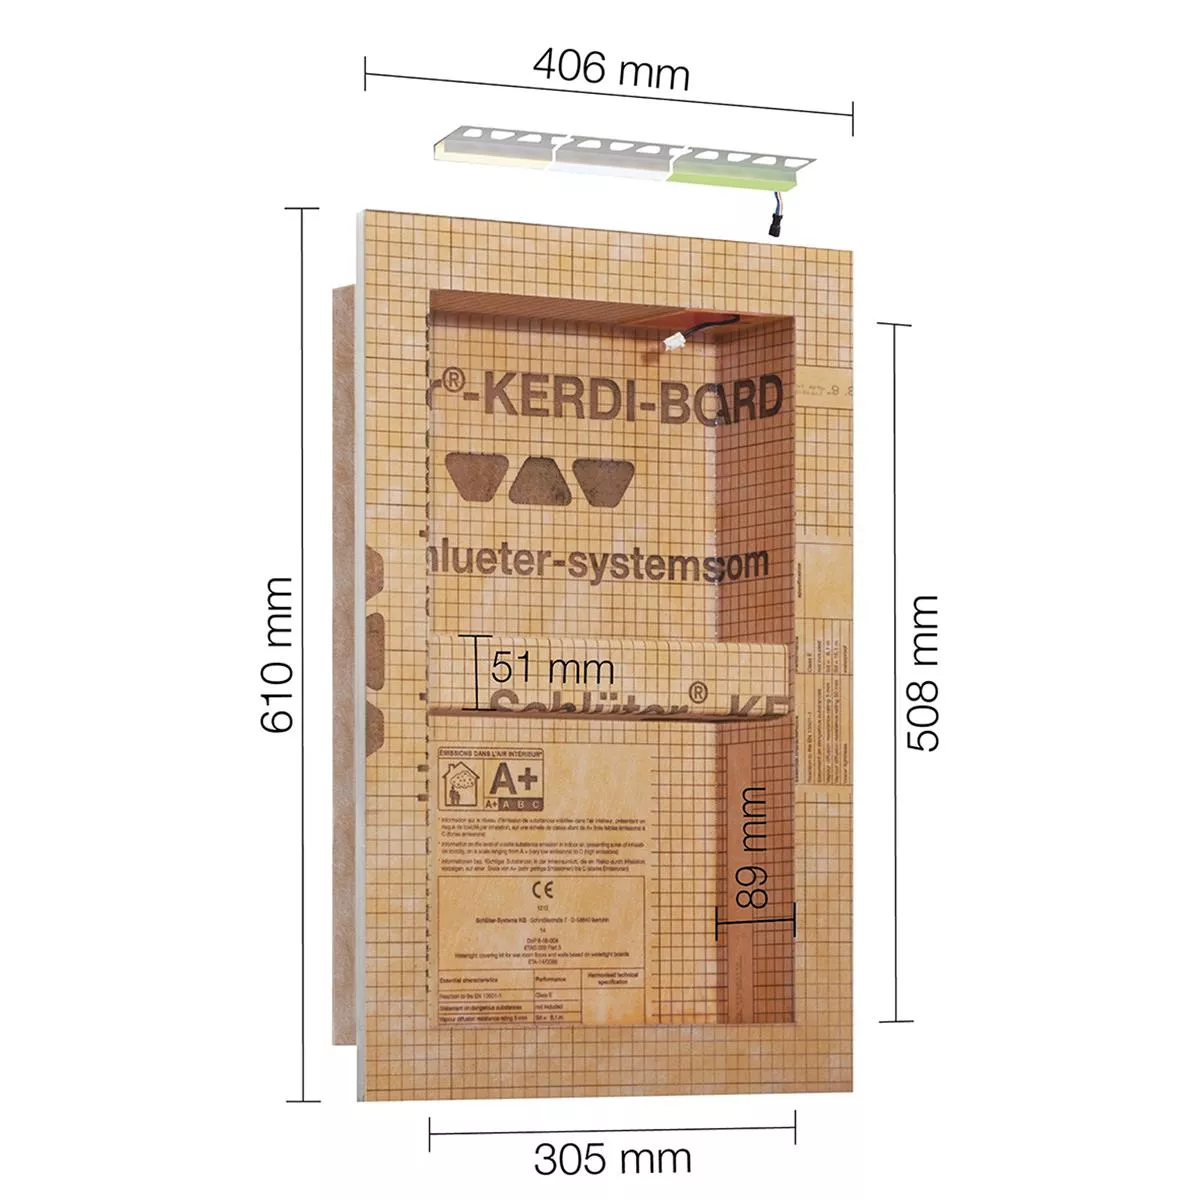 Schlüter Kerdi Board NLT juego de nicho iluminación LED RGB 30,5x50,8x0,89 cm